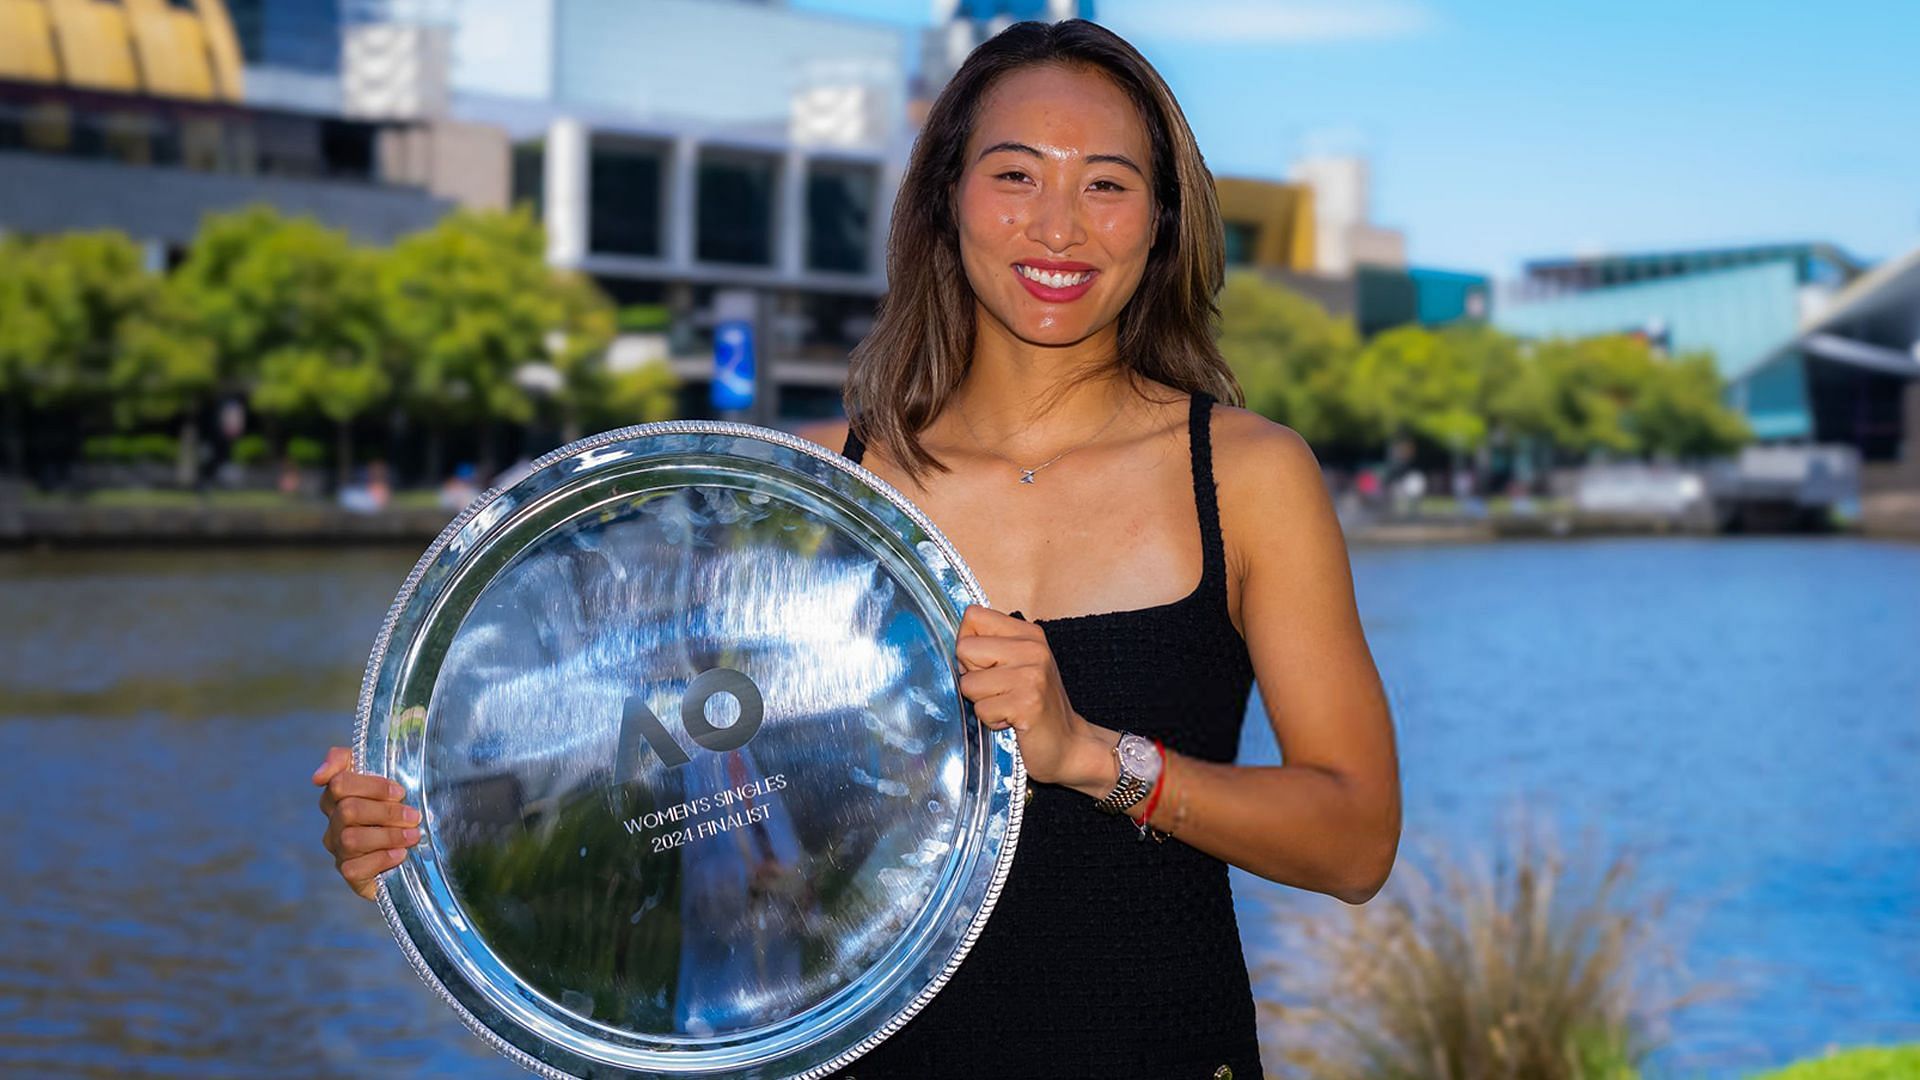 Zheng Qinwen poses with Australian Open runner -up trophy wearing Miu Miu Tweed dress